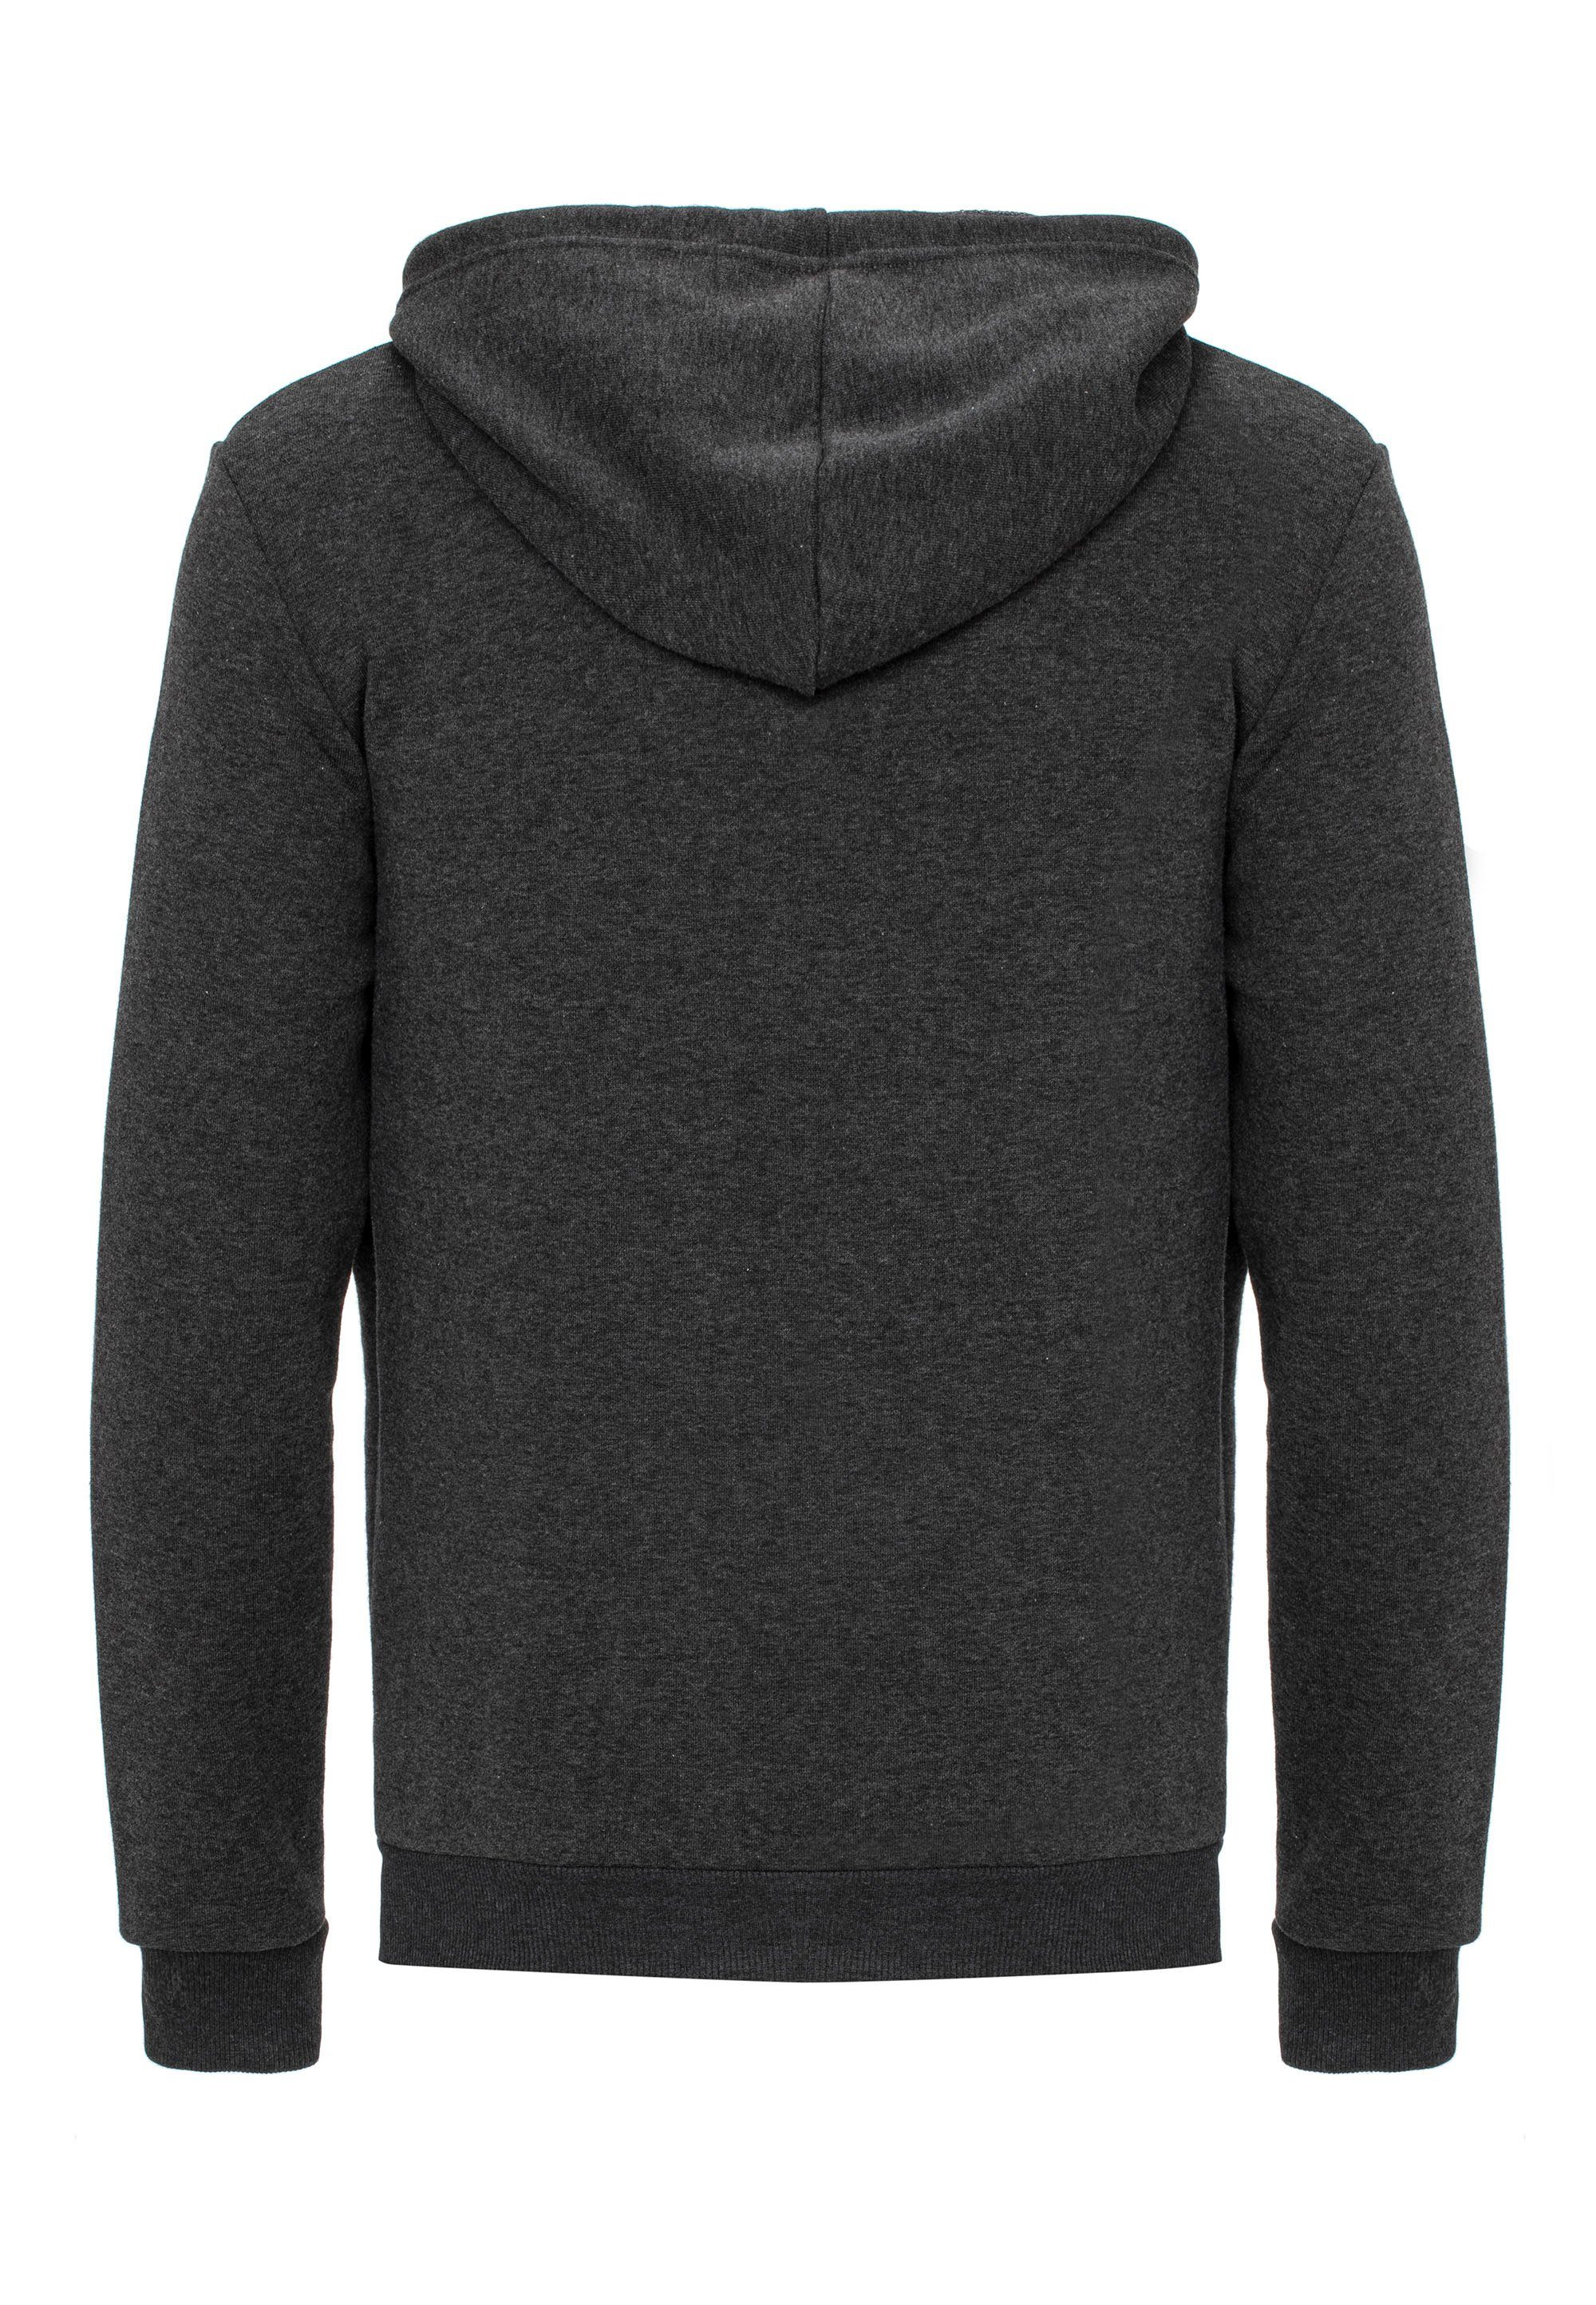 Anthrazit mit RedBridge vielseitig, Logopatch Sweater Premium Kapuzensweatjacke modisch